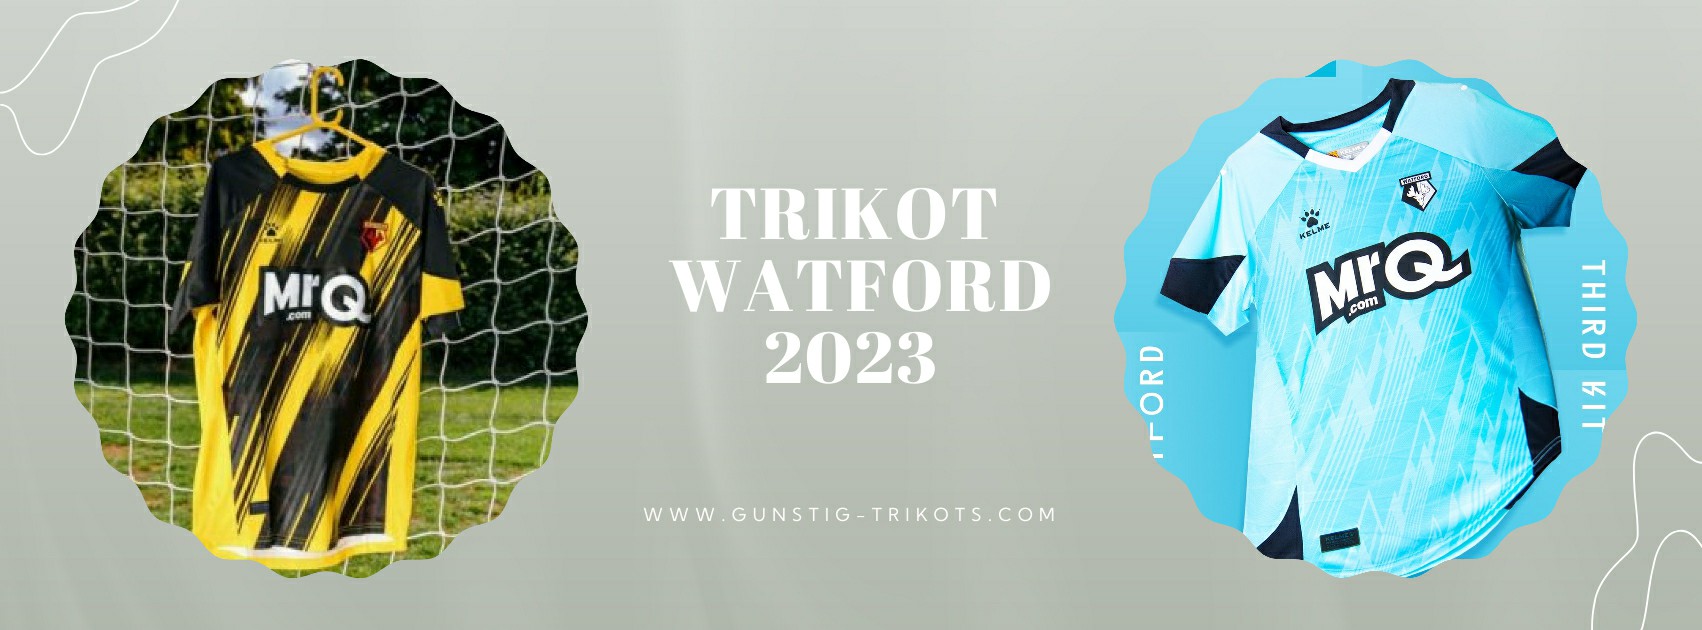 Watford Trikot 2023-2024